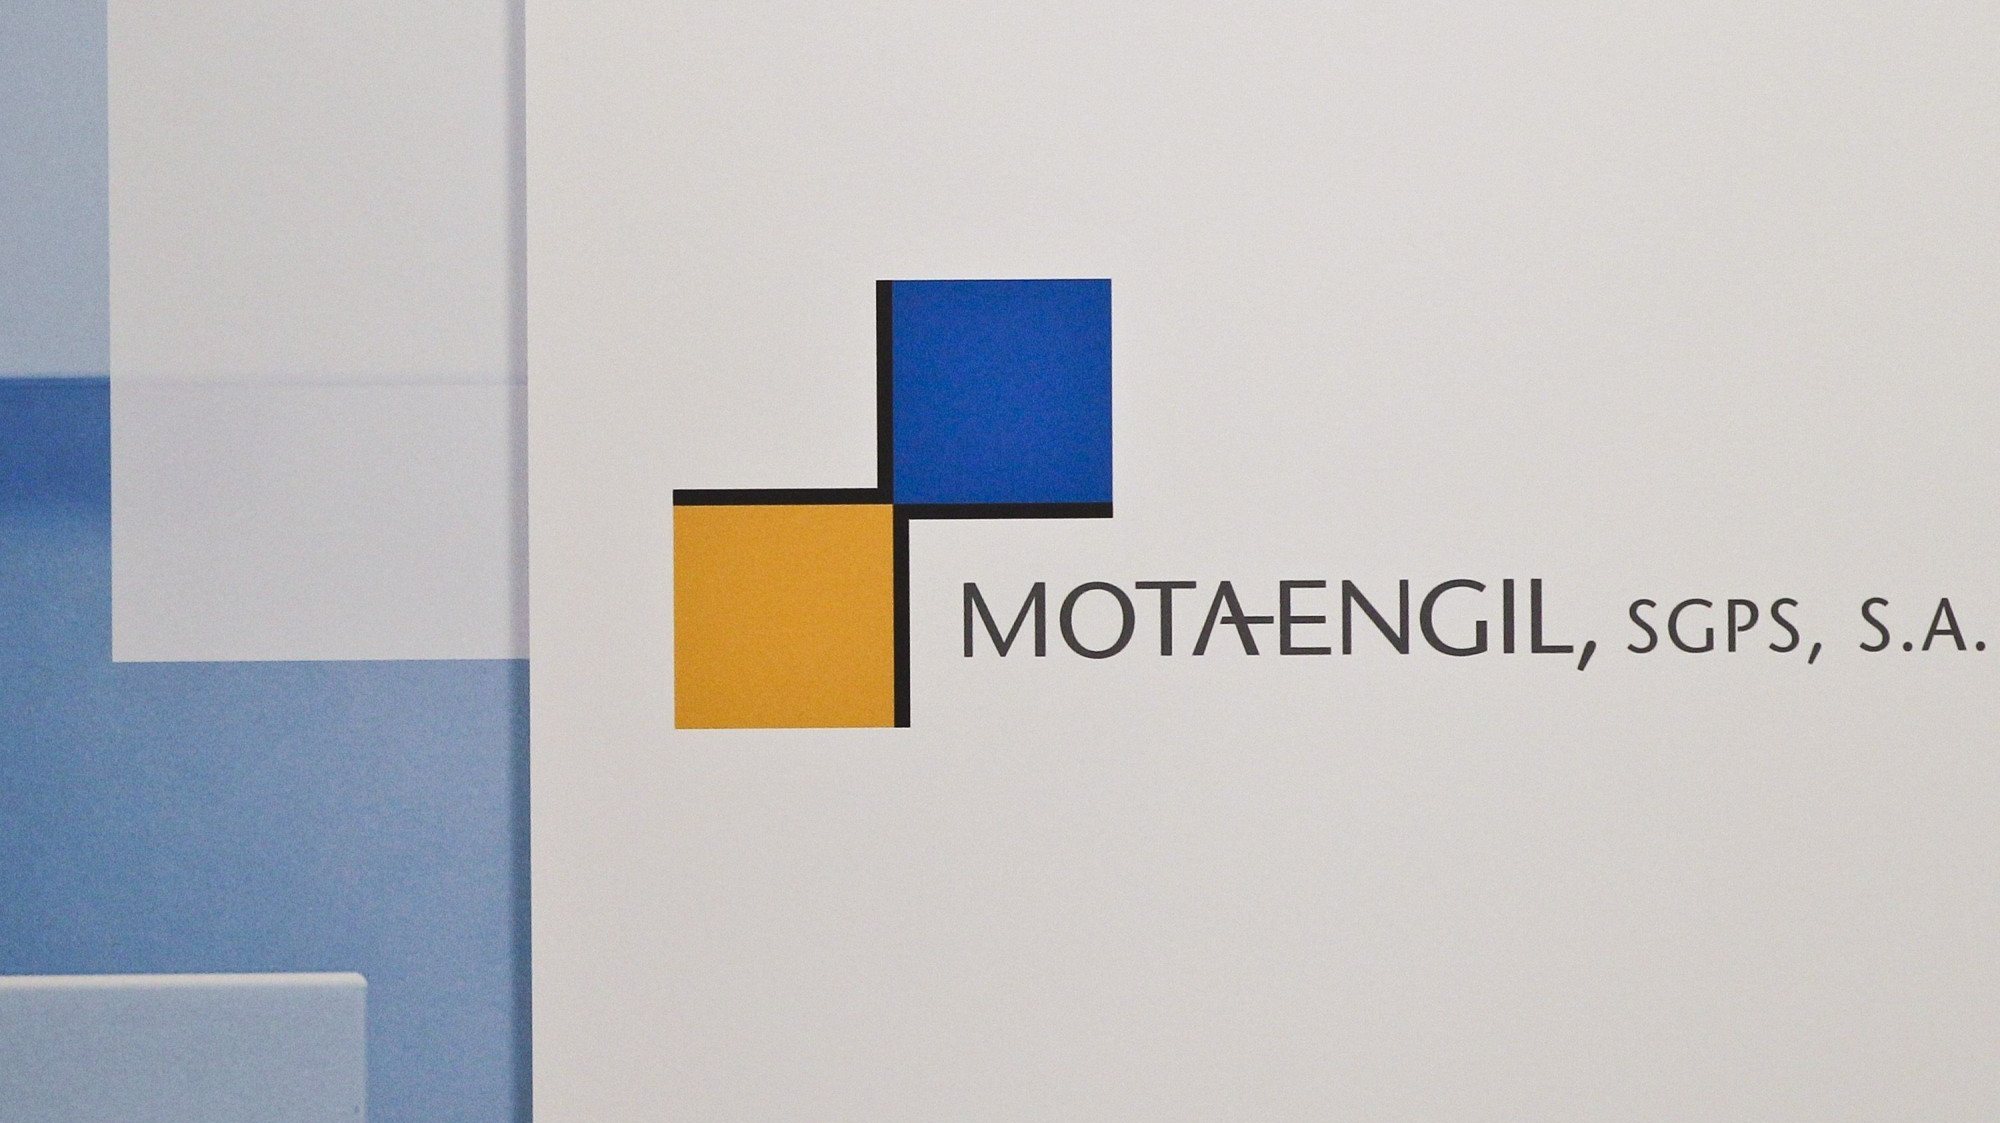 A Mota-Engil Angola é uma subsidiária da construtora portuguesa Mota-Engil